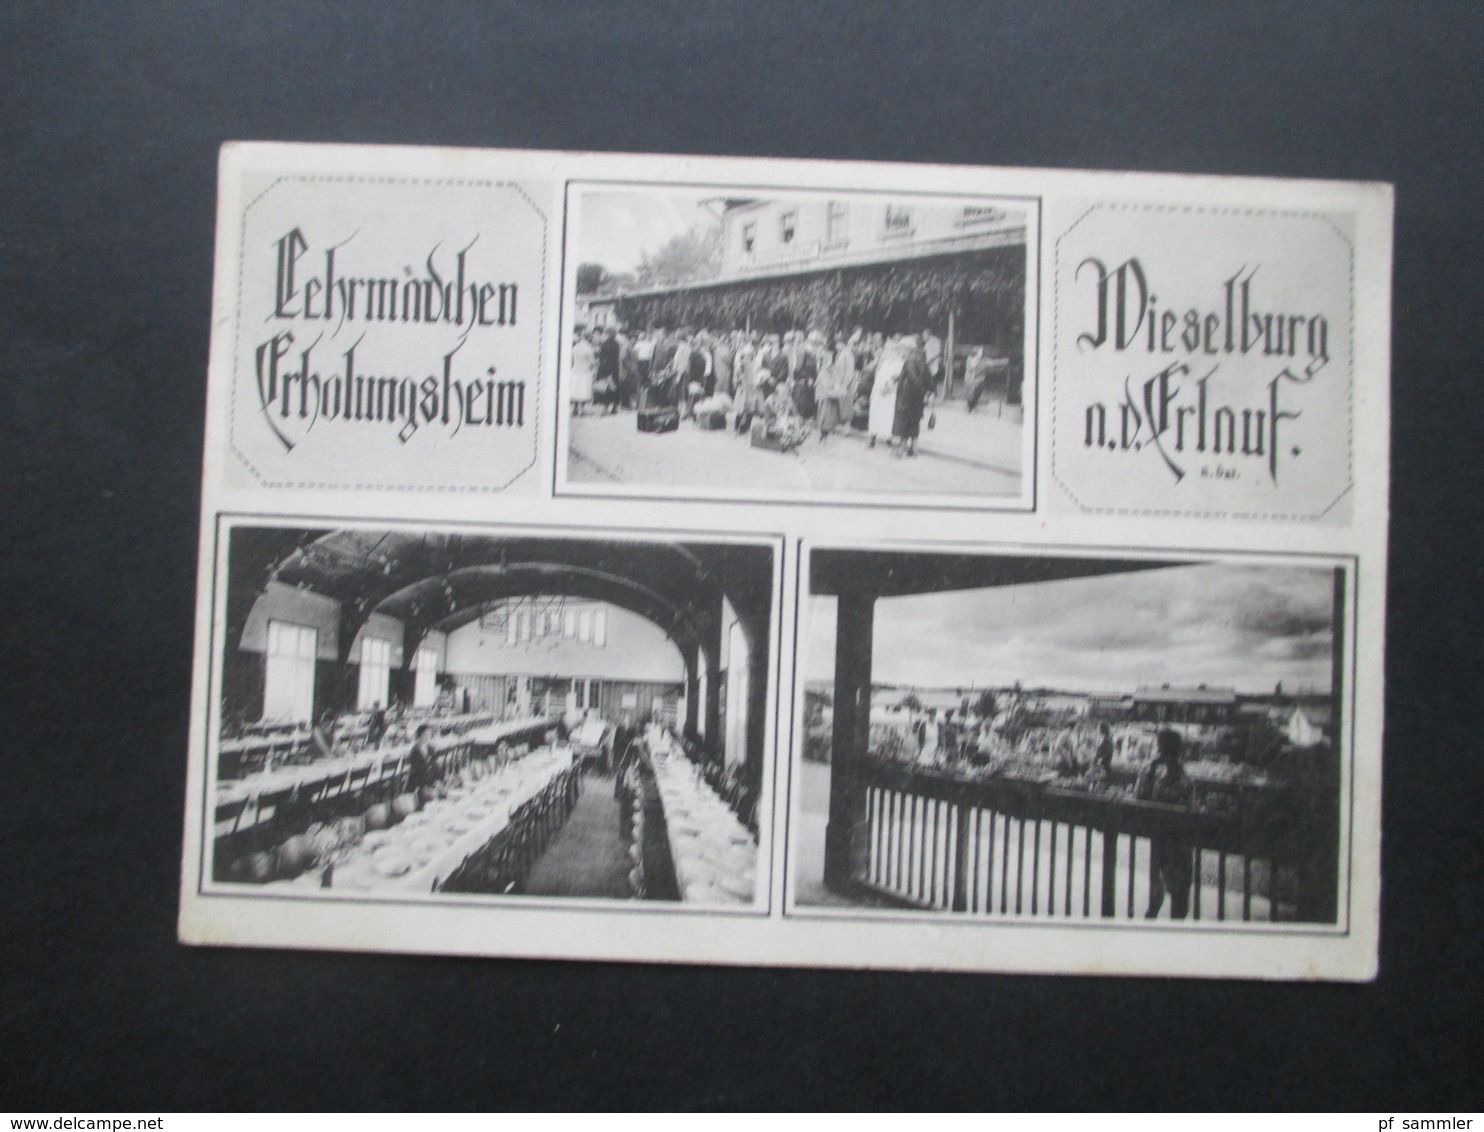 Österreich 1925 Mehrbildkarte Lehrmädchen Erholungsheim Wieselburg A.d. Erlauf Phot. J. Perscheid, Wien III - Hotels & Restaurants